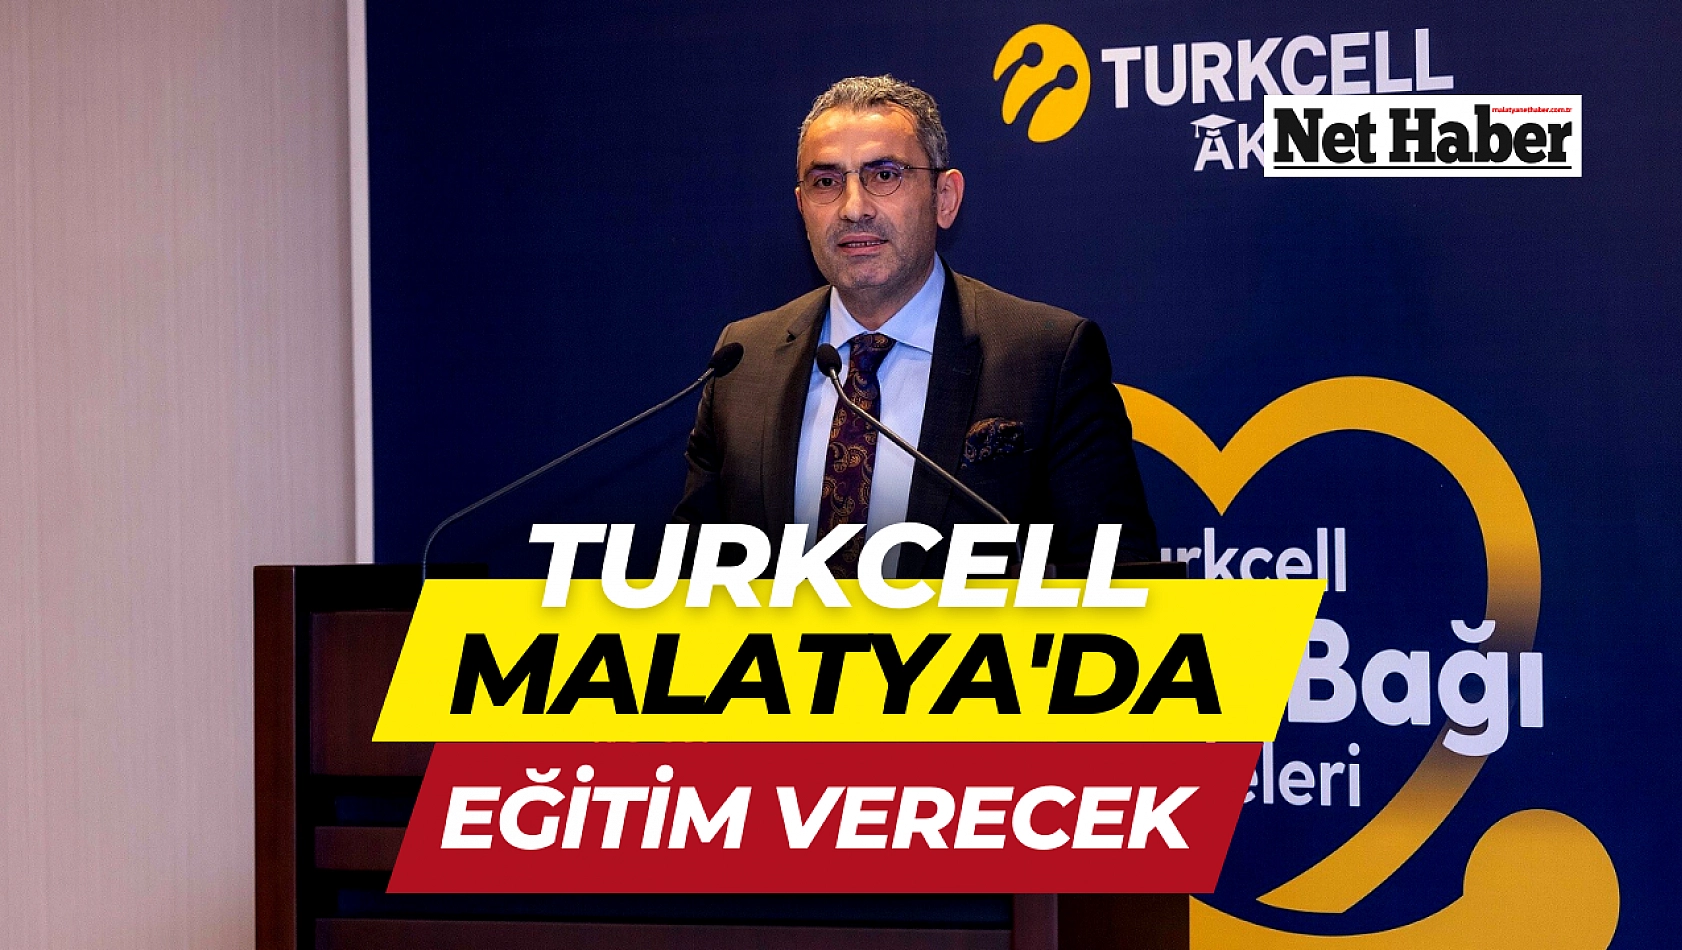 Turkcell Malatya'da eğitim verecek